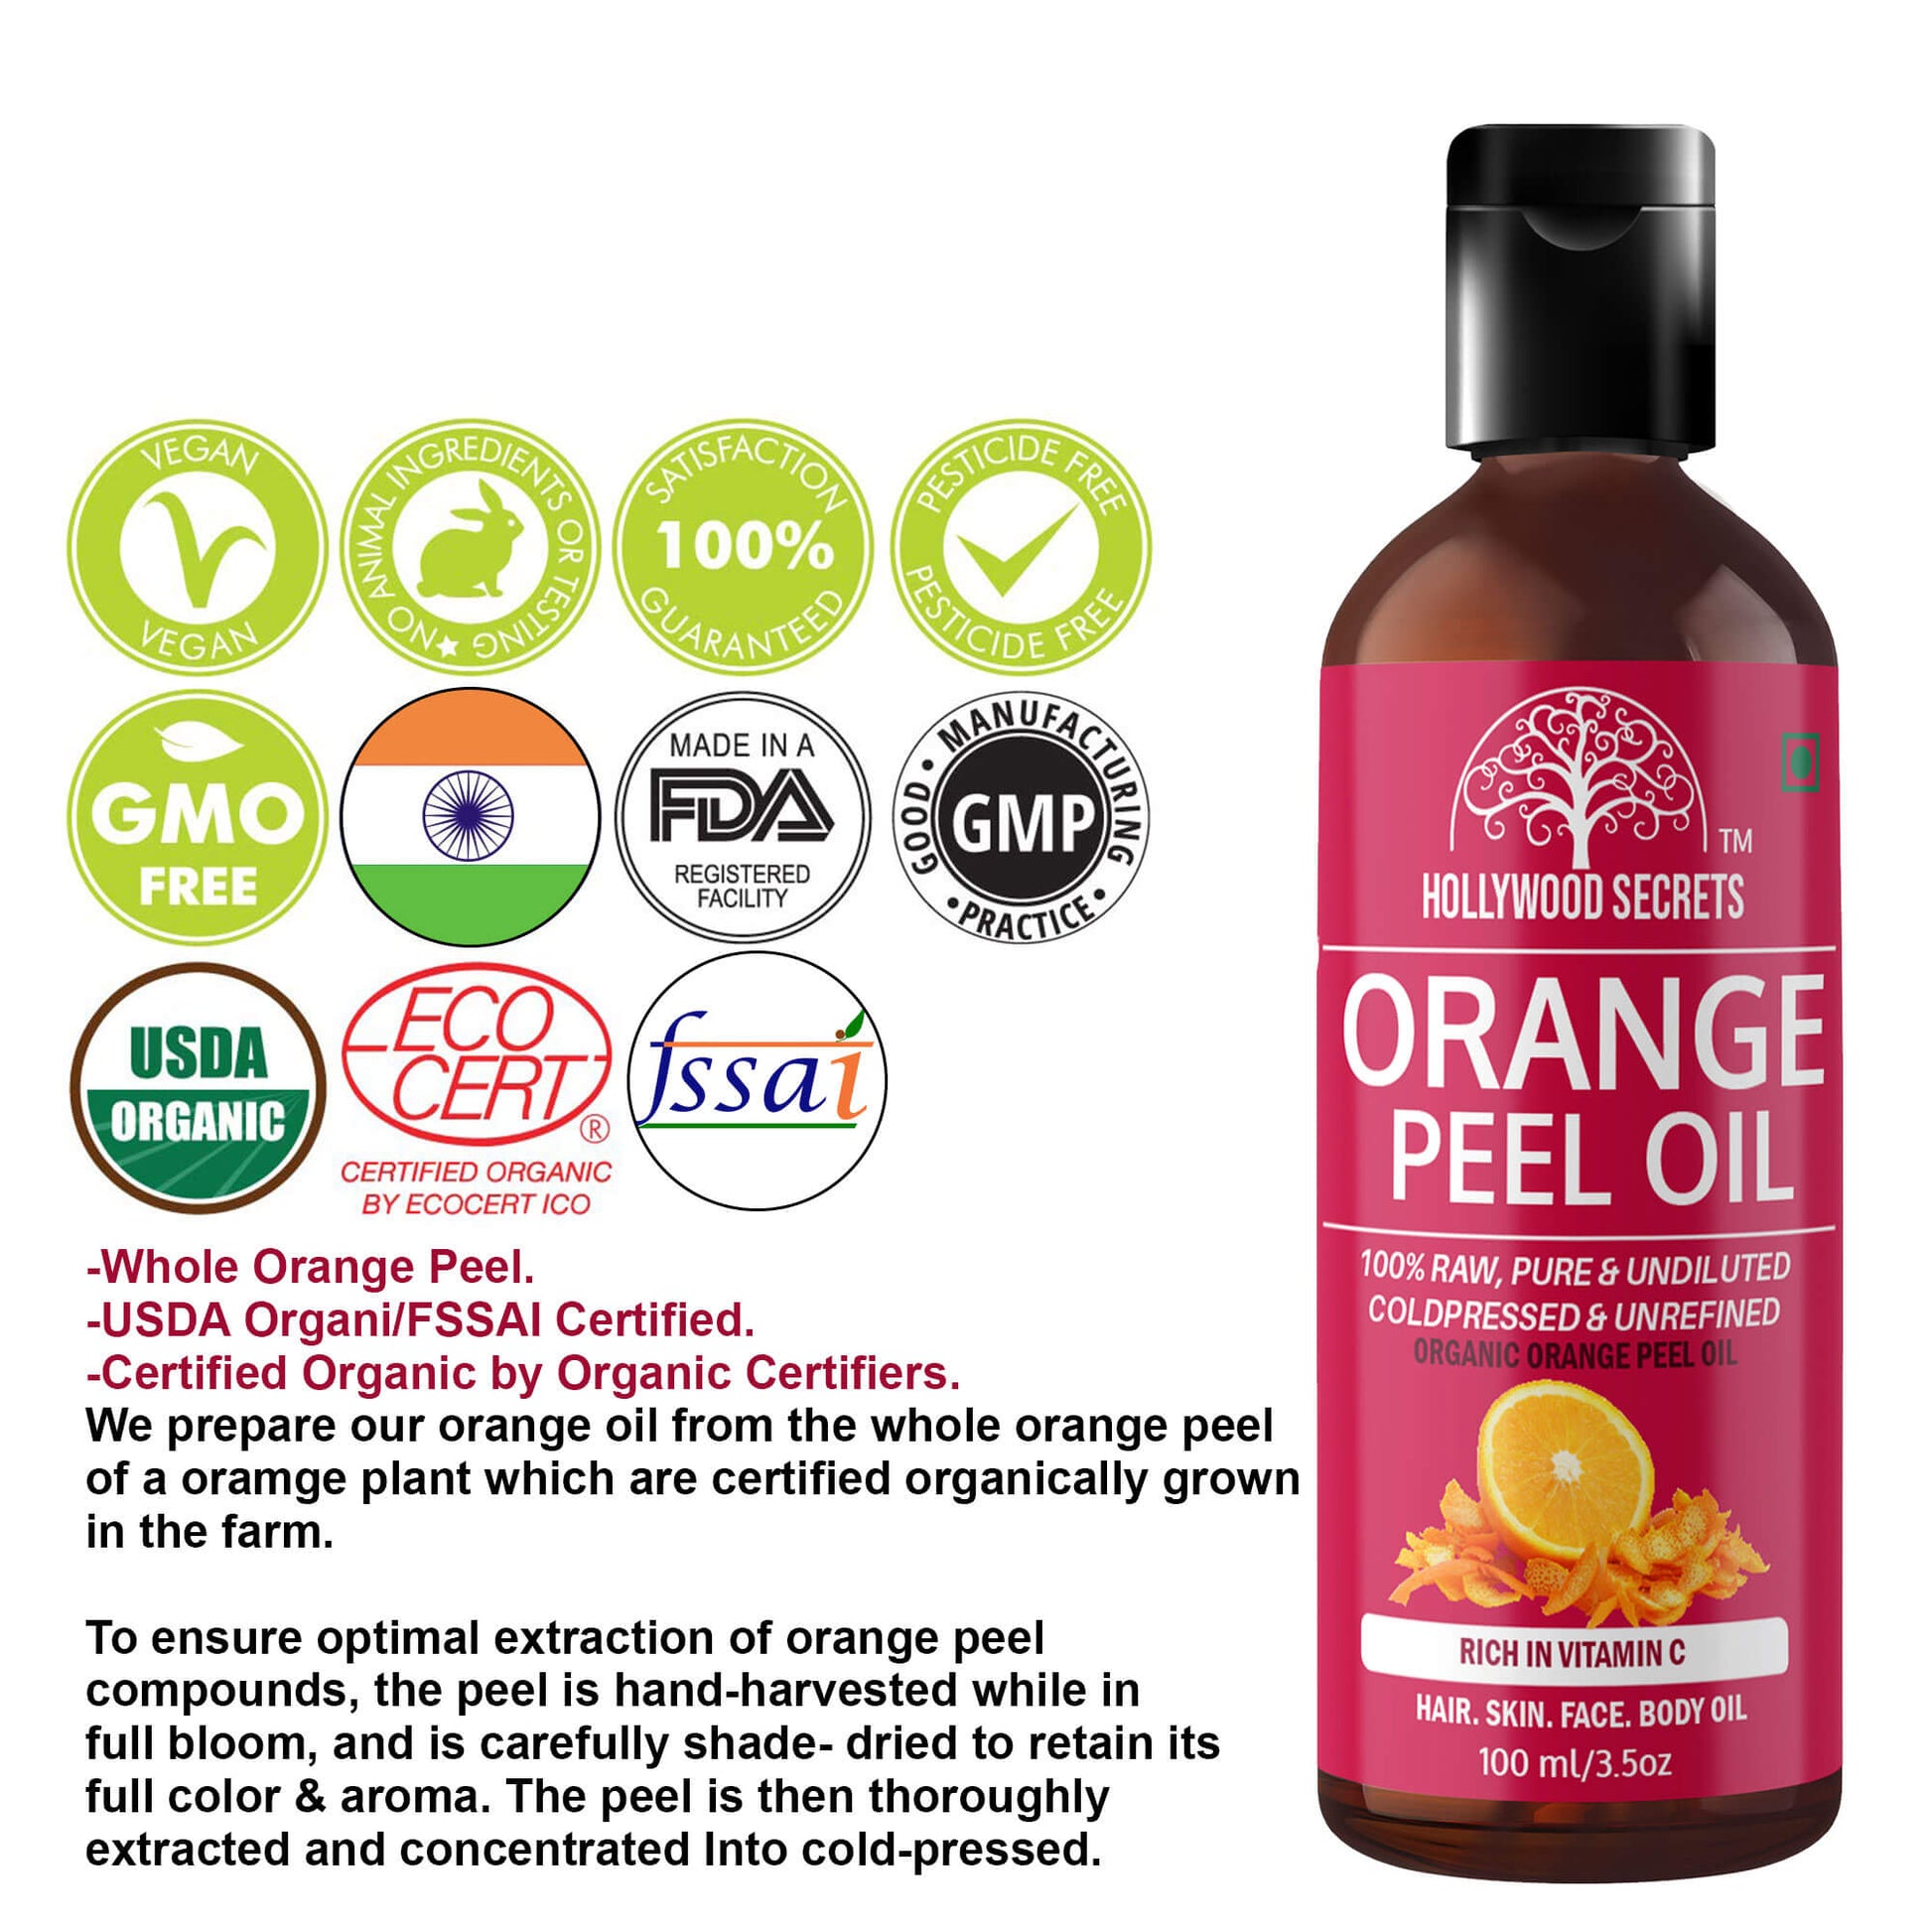 Orange Peel Oil Pure Cold Pressed 100ml Hollywood Secrets